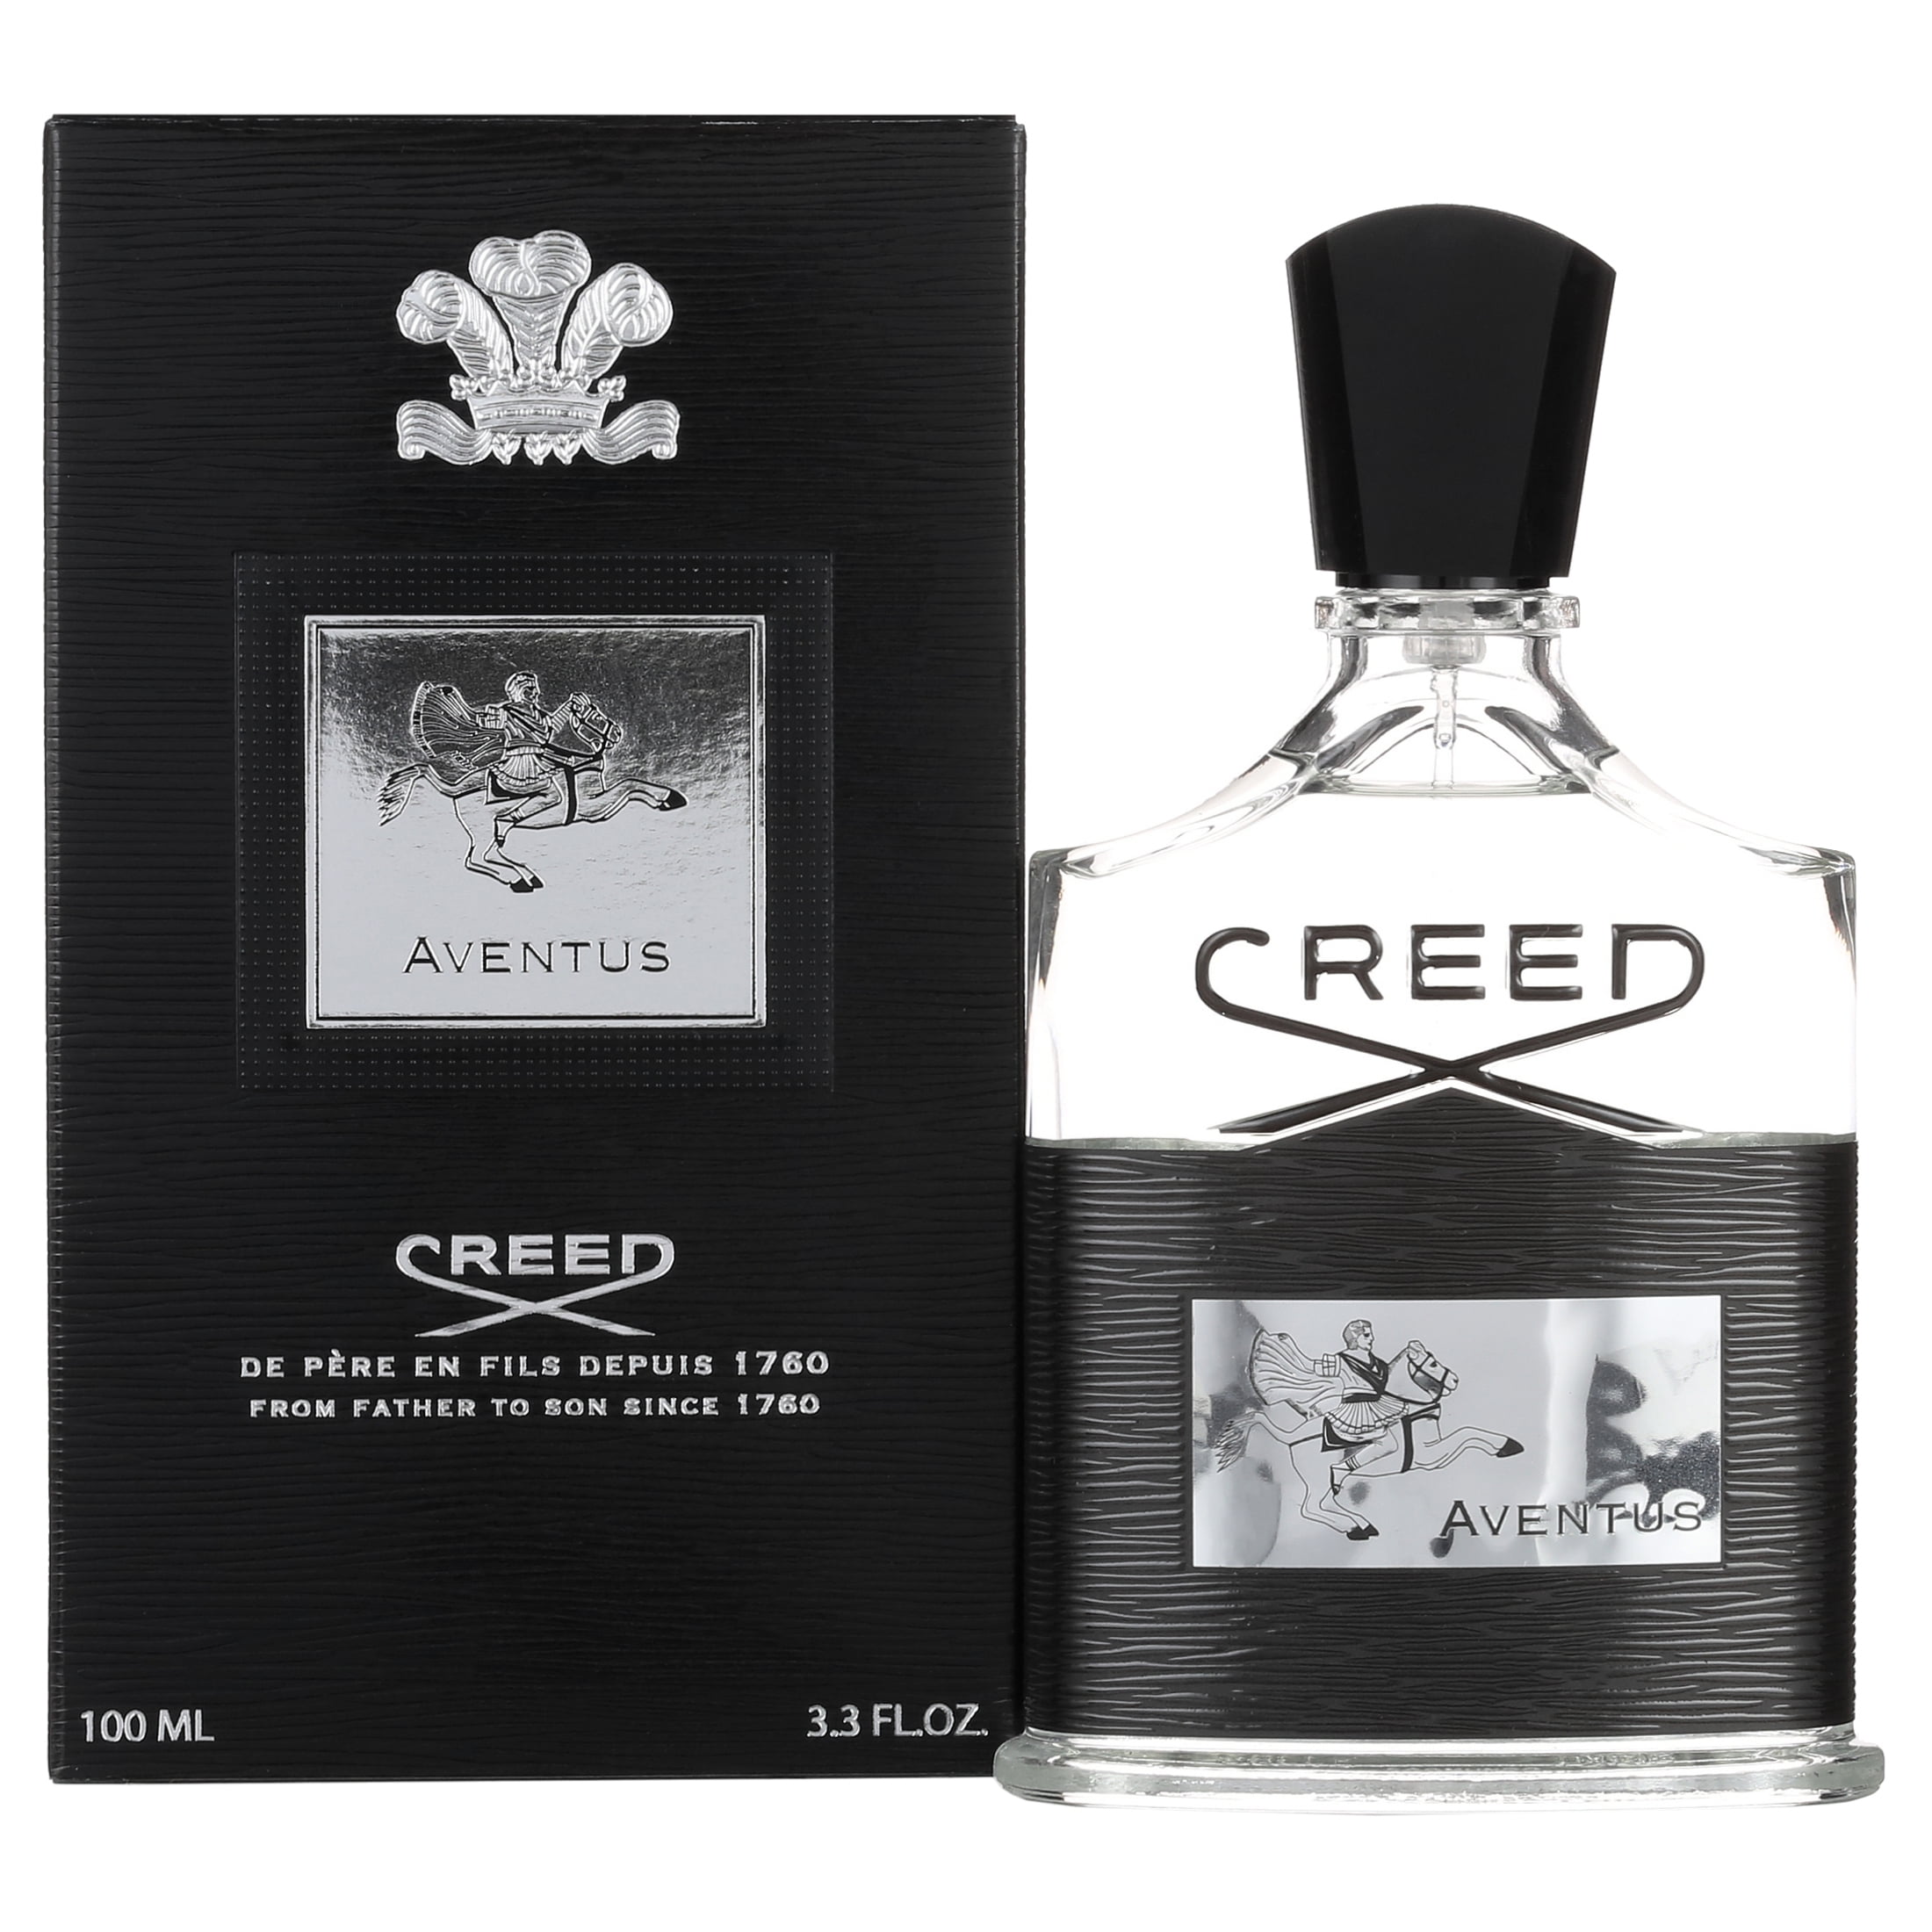 435 Value) Creed Aventus Eau de Parfum, Cologne for Men 